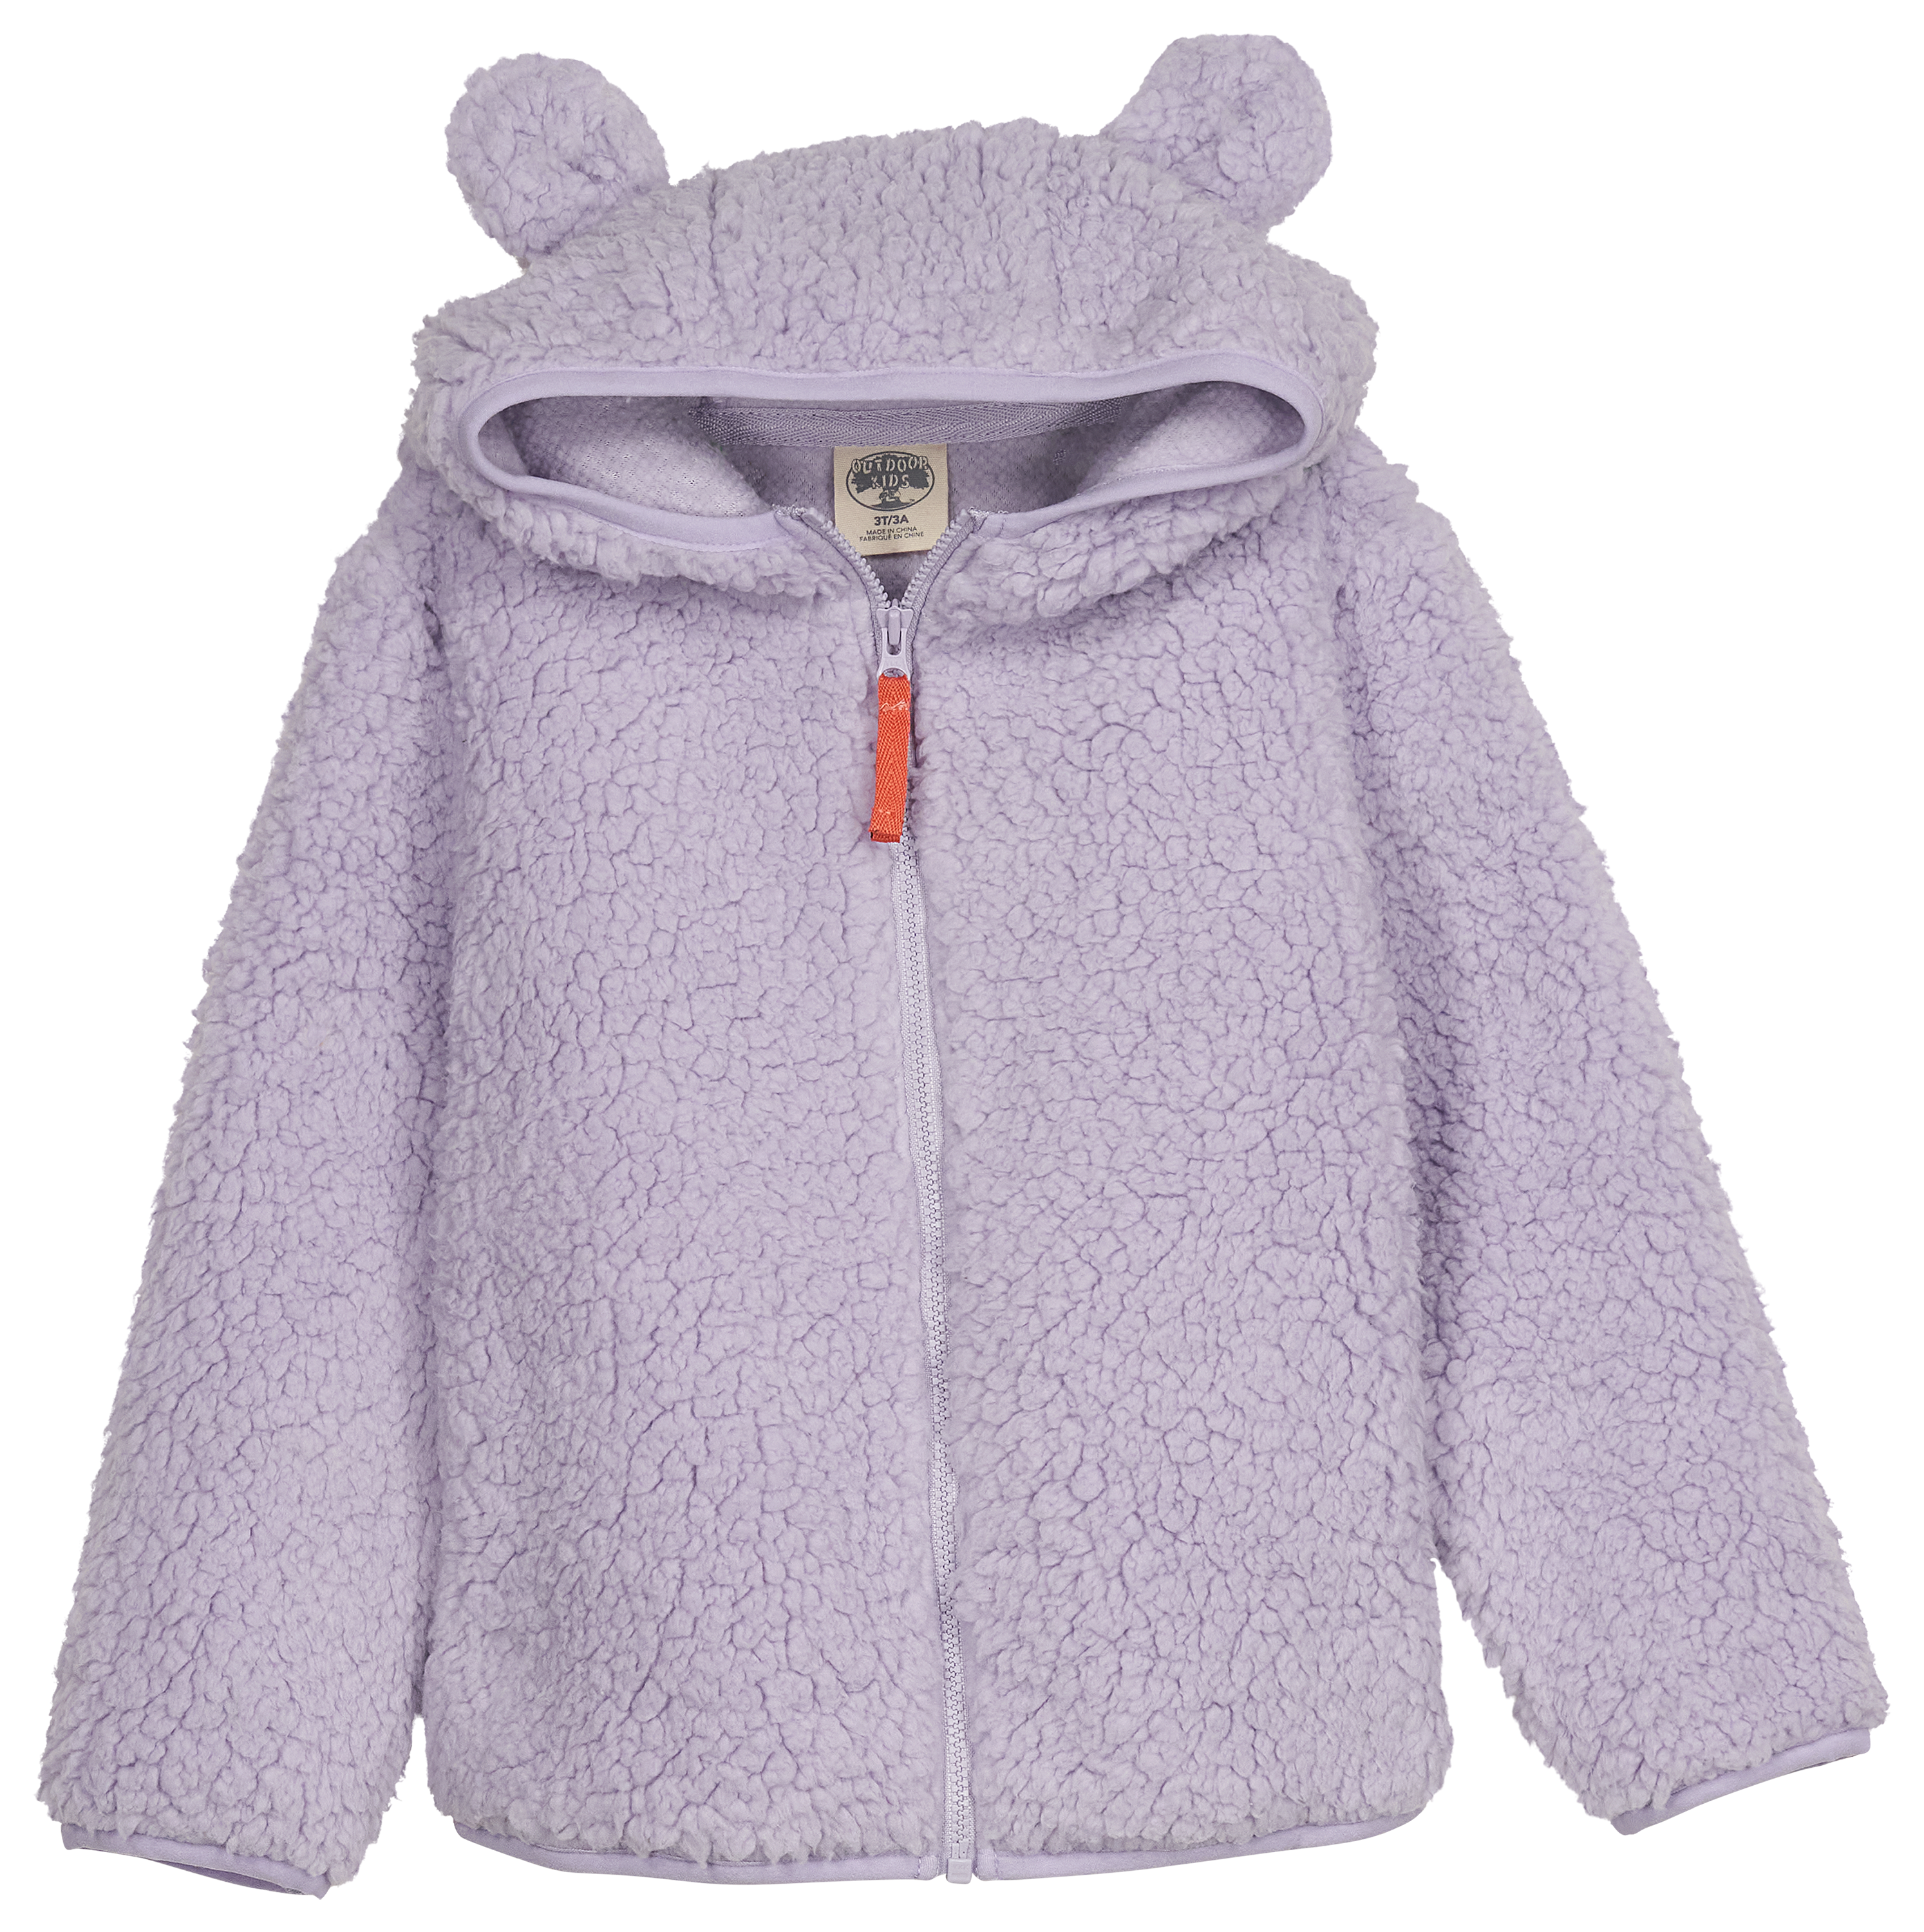 Outdoor Kids Cozy Fleece Full-Zip Hoodie for Babies - Lavender - 0-3 Months